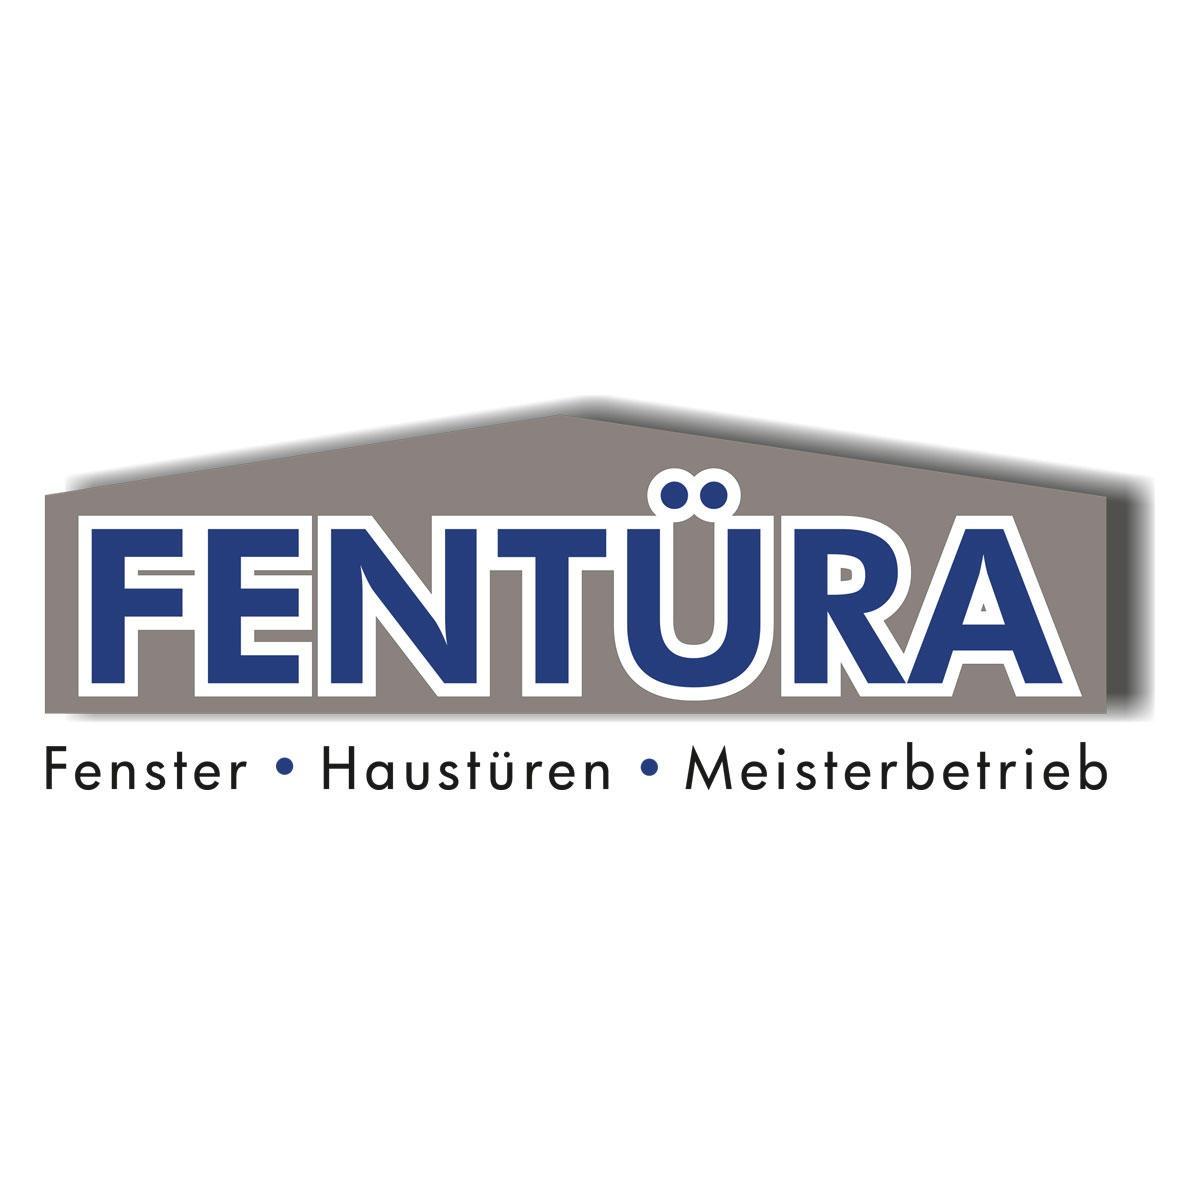 Fentüra GmbH & Co. KG in Hagen in Westfalen - Logo